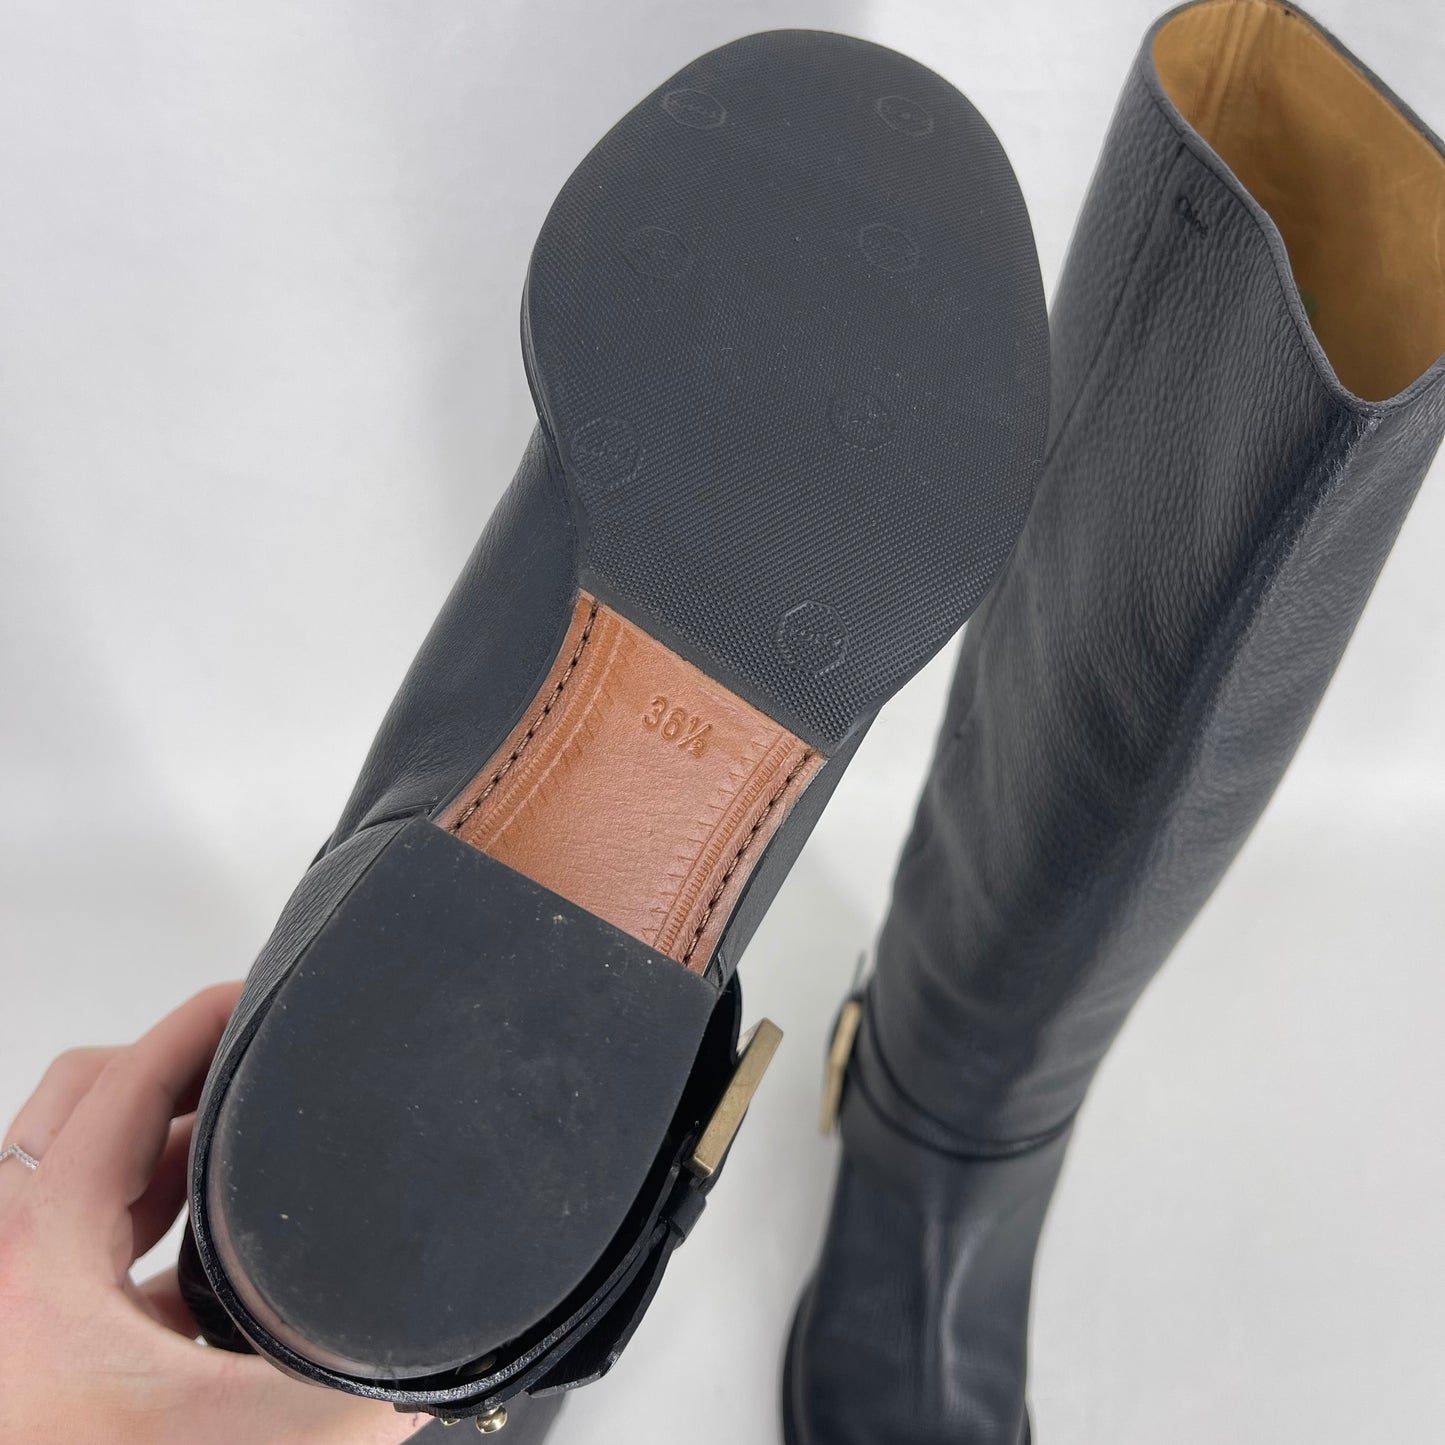 Authentic Chloe BlCk Buckle Leather Boots Sz 36.5